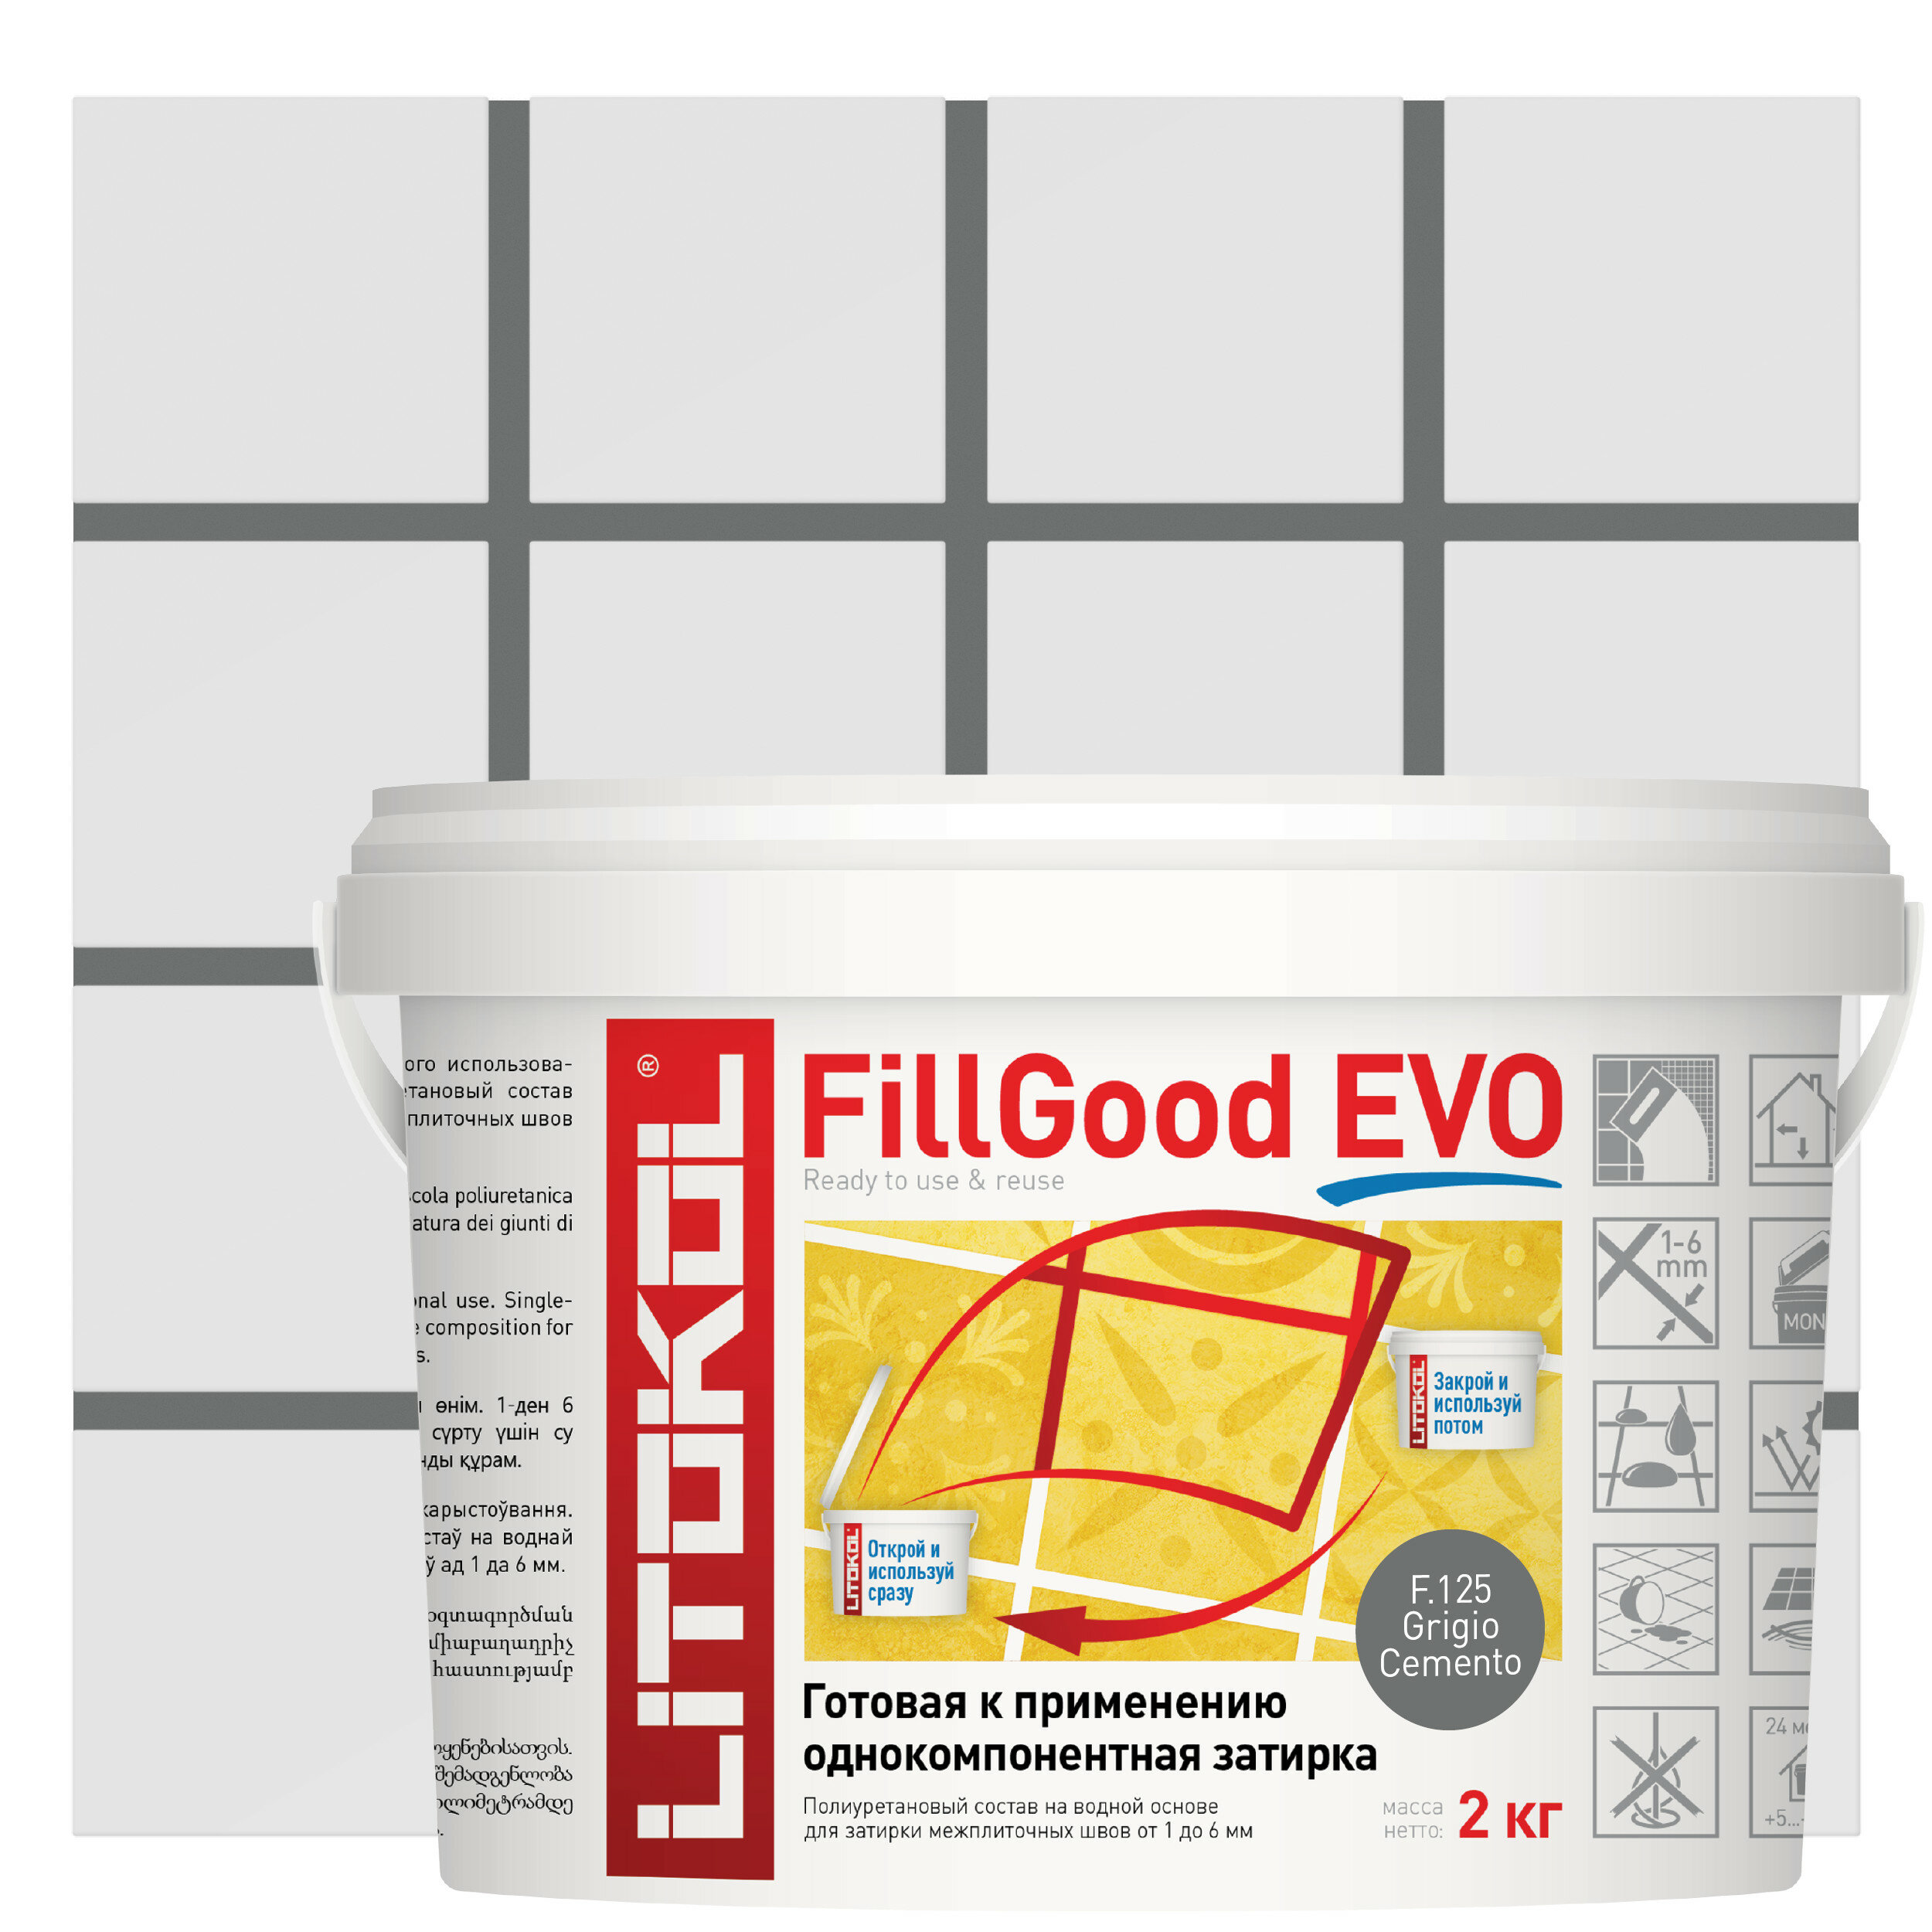 Затирка полиуретановая Litokol Fillgood Evo F125 цвет серый цемент 2 кг